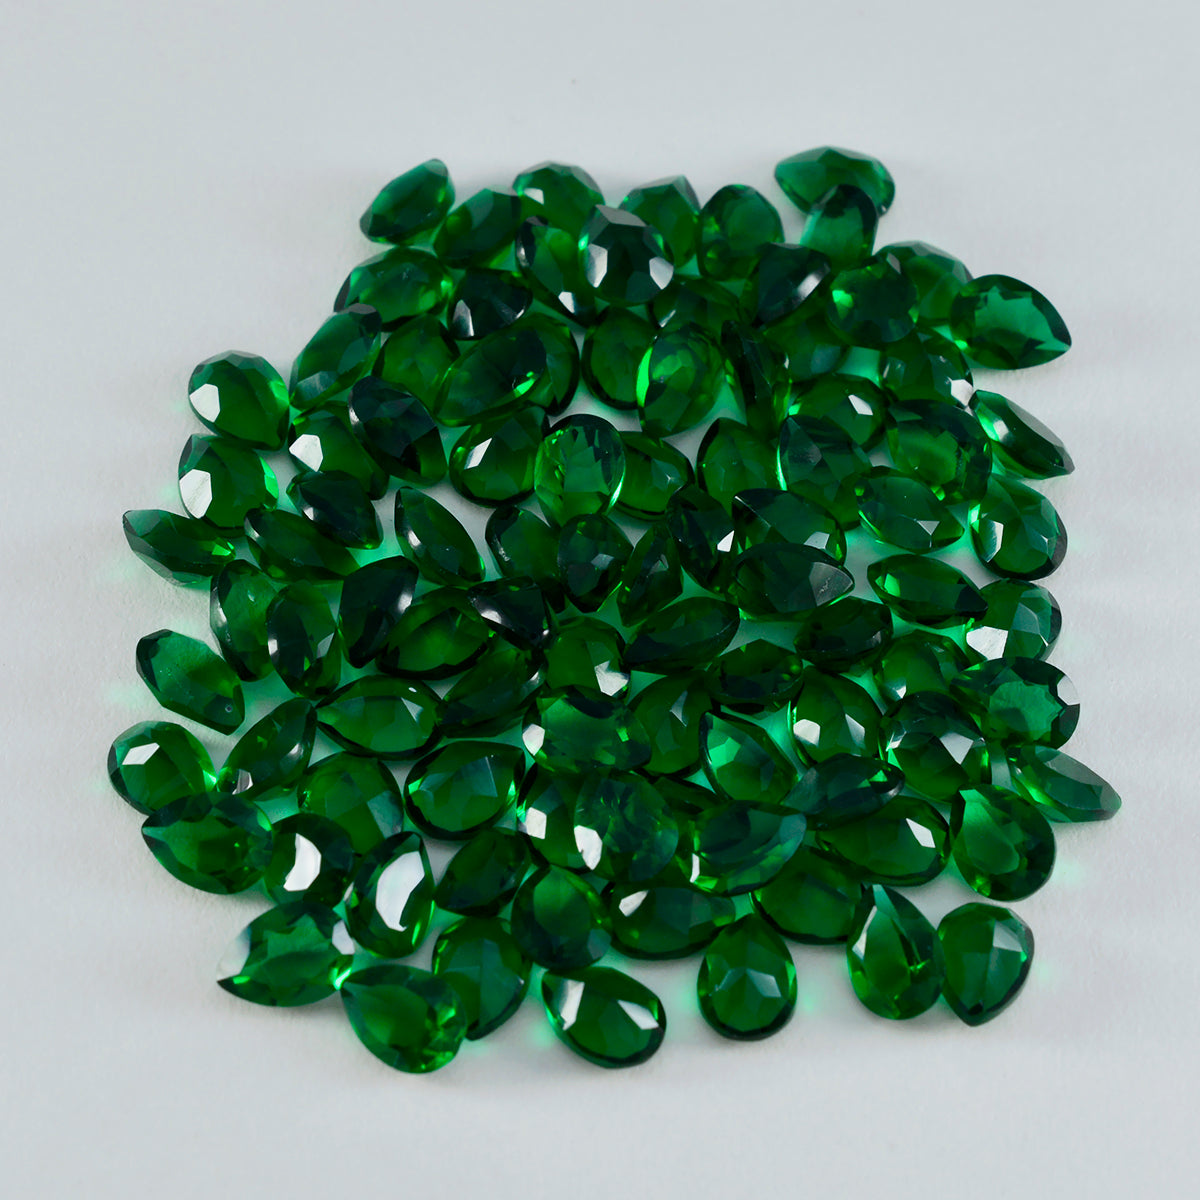 Riyogems 1 pieza Esmeralda verde CZ facetada 5x7 mm forma de pera gema de gran calidad